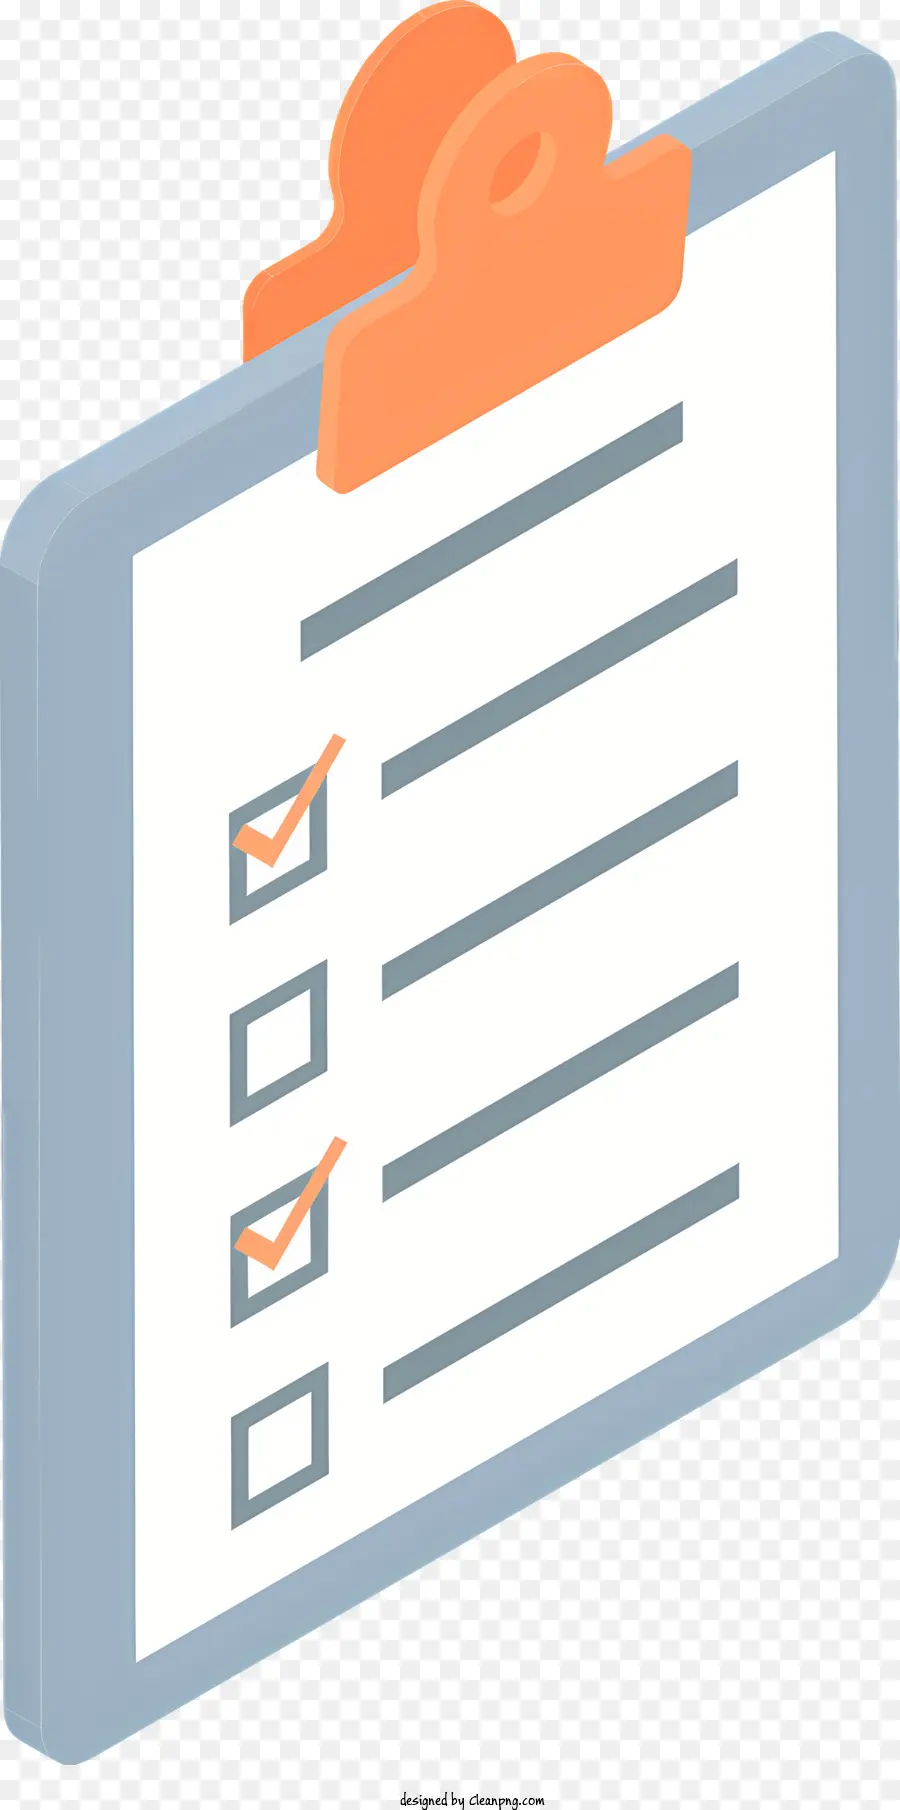 Checkliste - Öffnen Sie die Zwischenablage mit ausgefüllter Checkliste und Checkmark